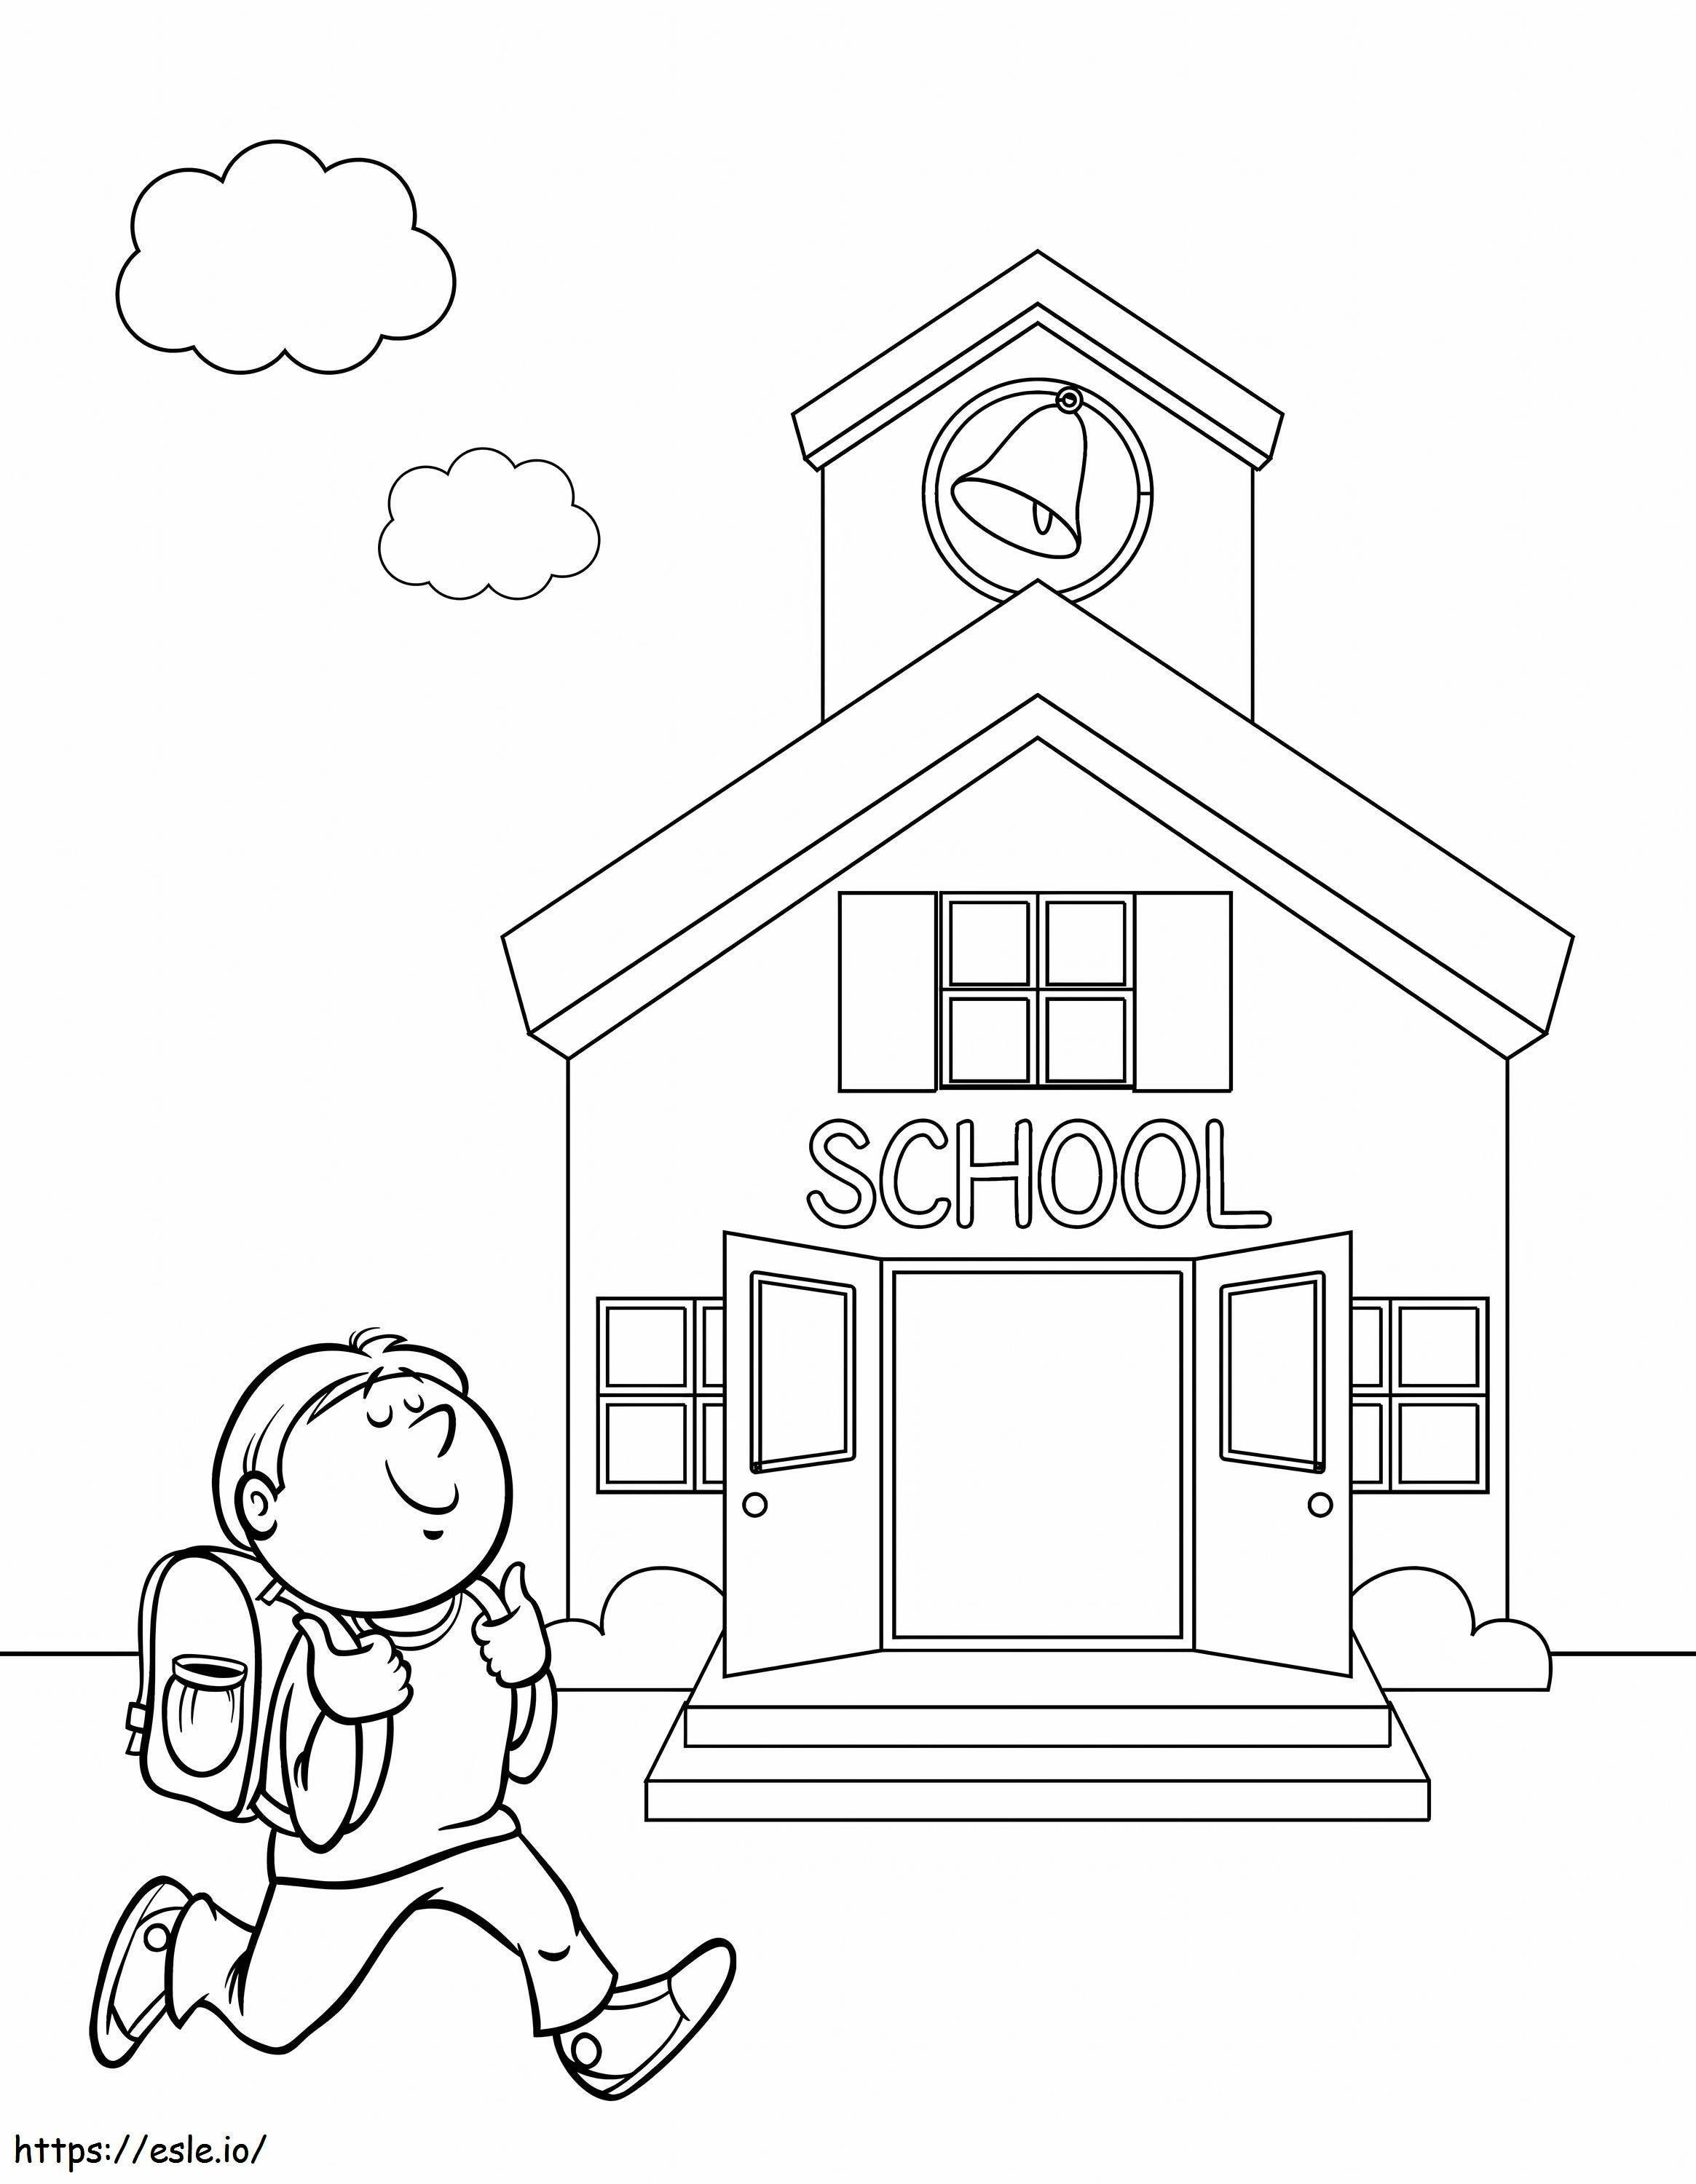 Uśmiechnięty chłopiec biegający do szkoły, skalowany kolorowanka